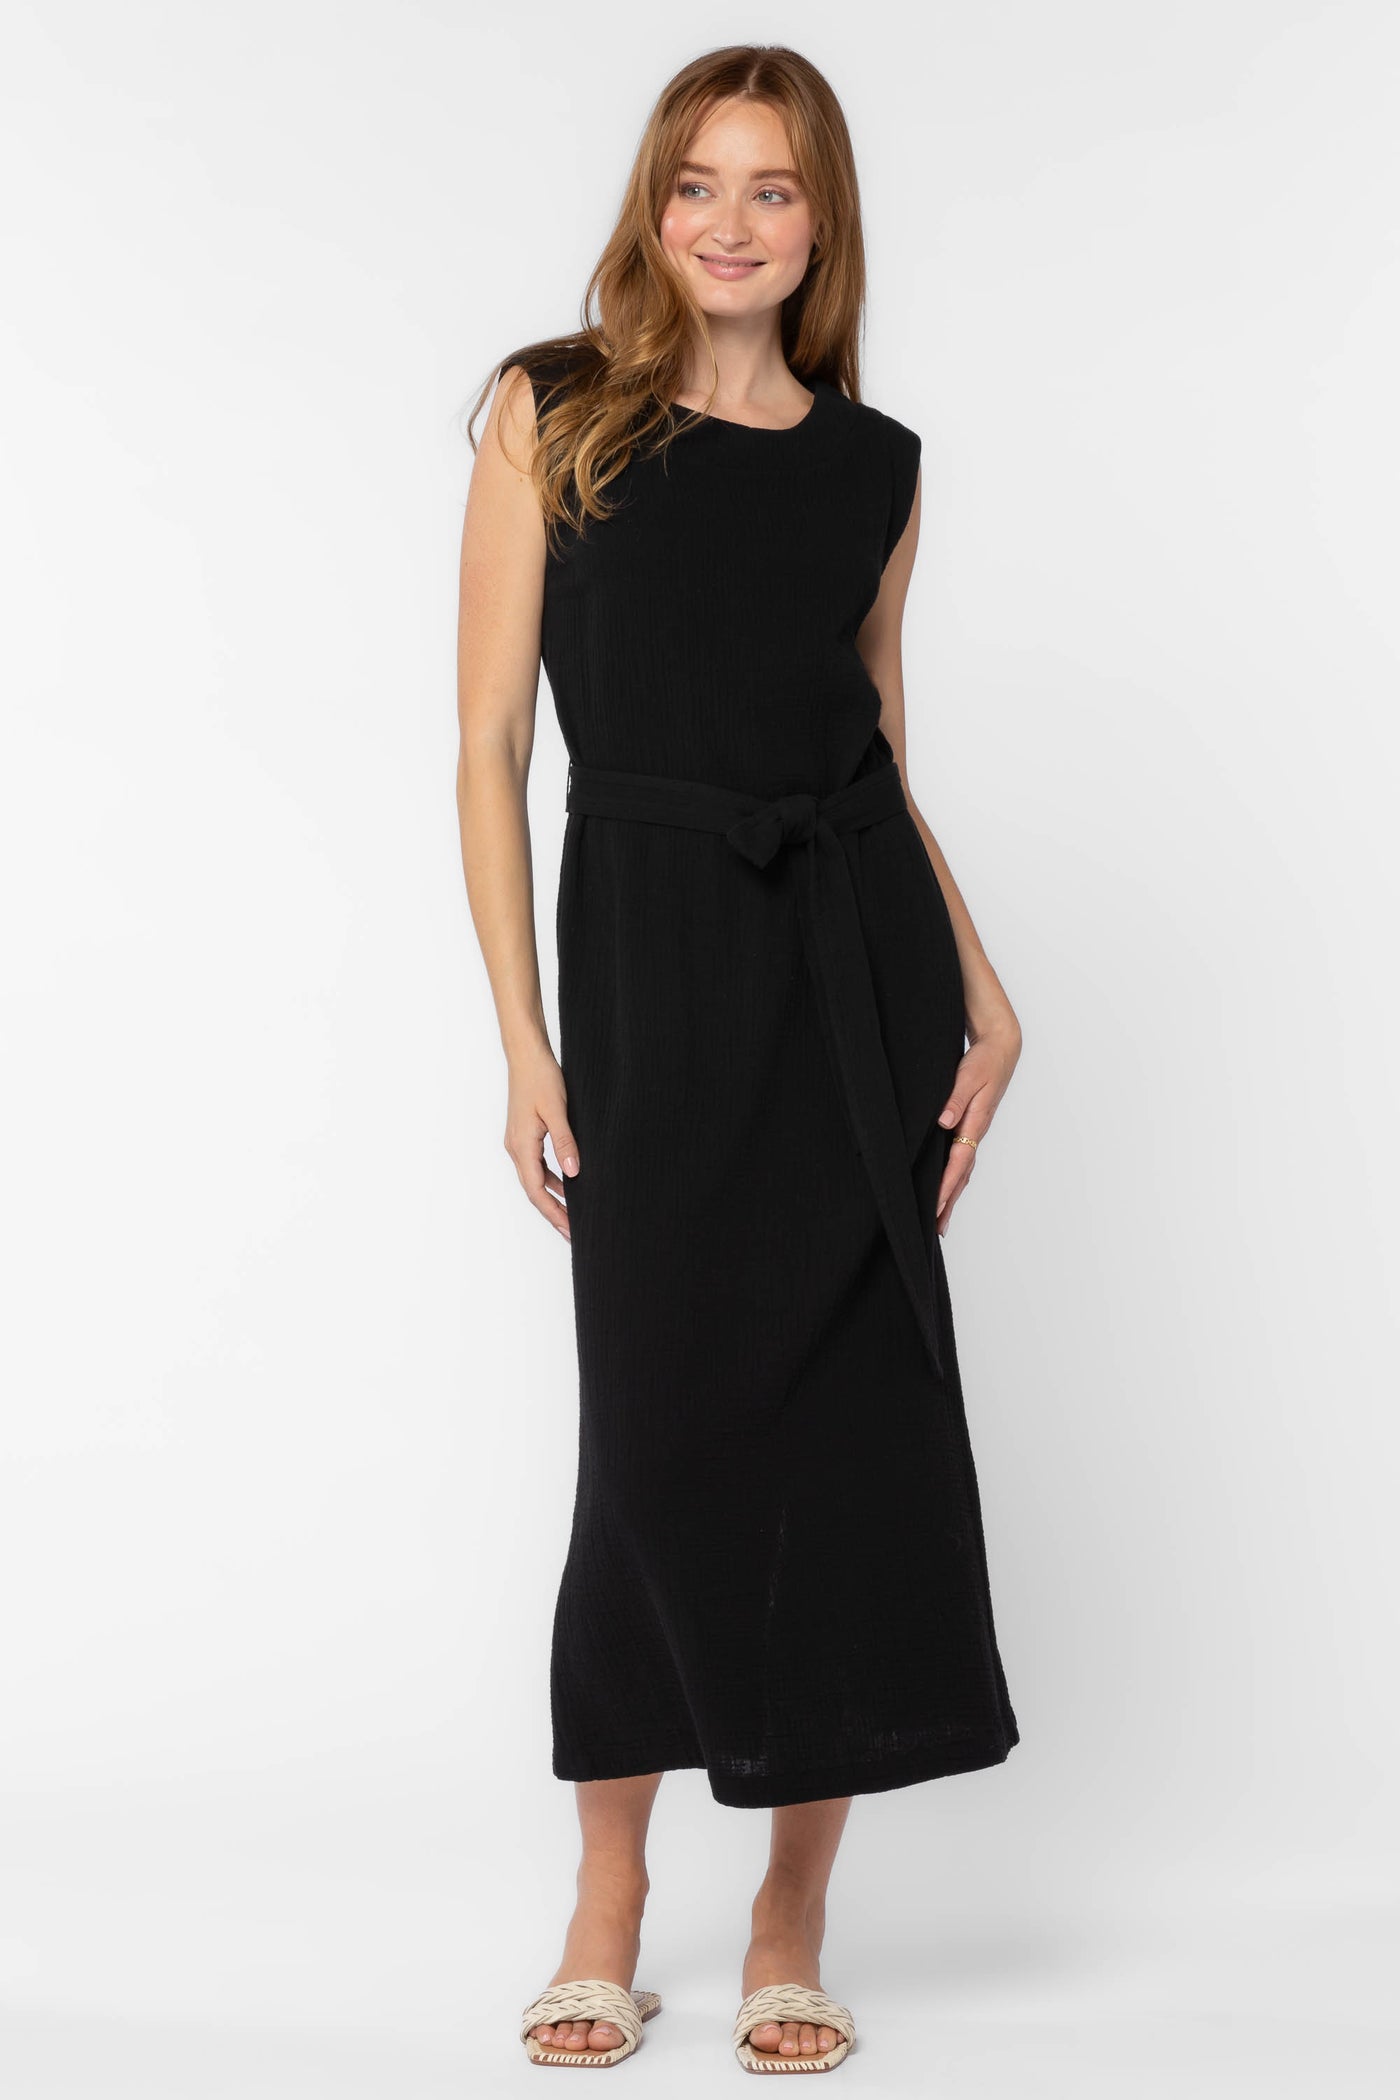 Aurelie Black Dress - Dresses - Velvet Heart Clothing